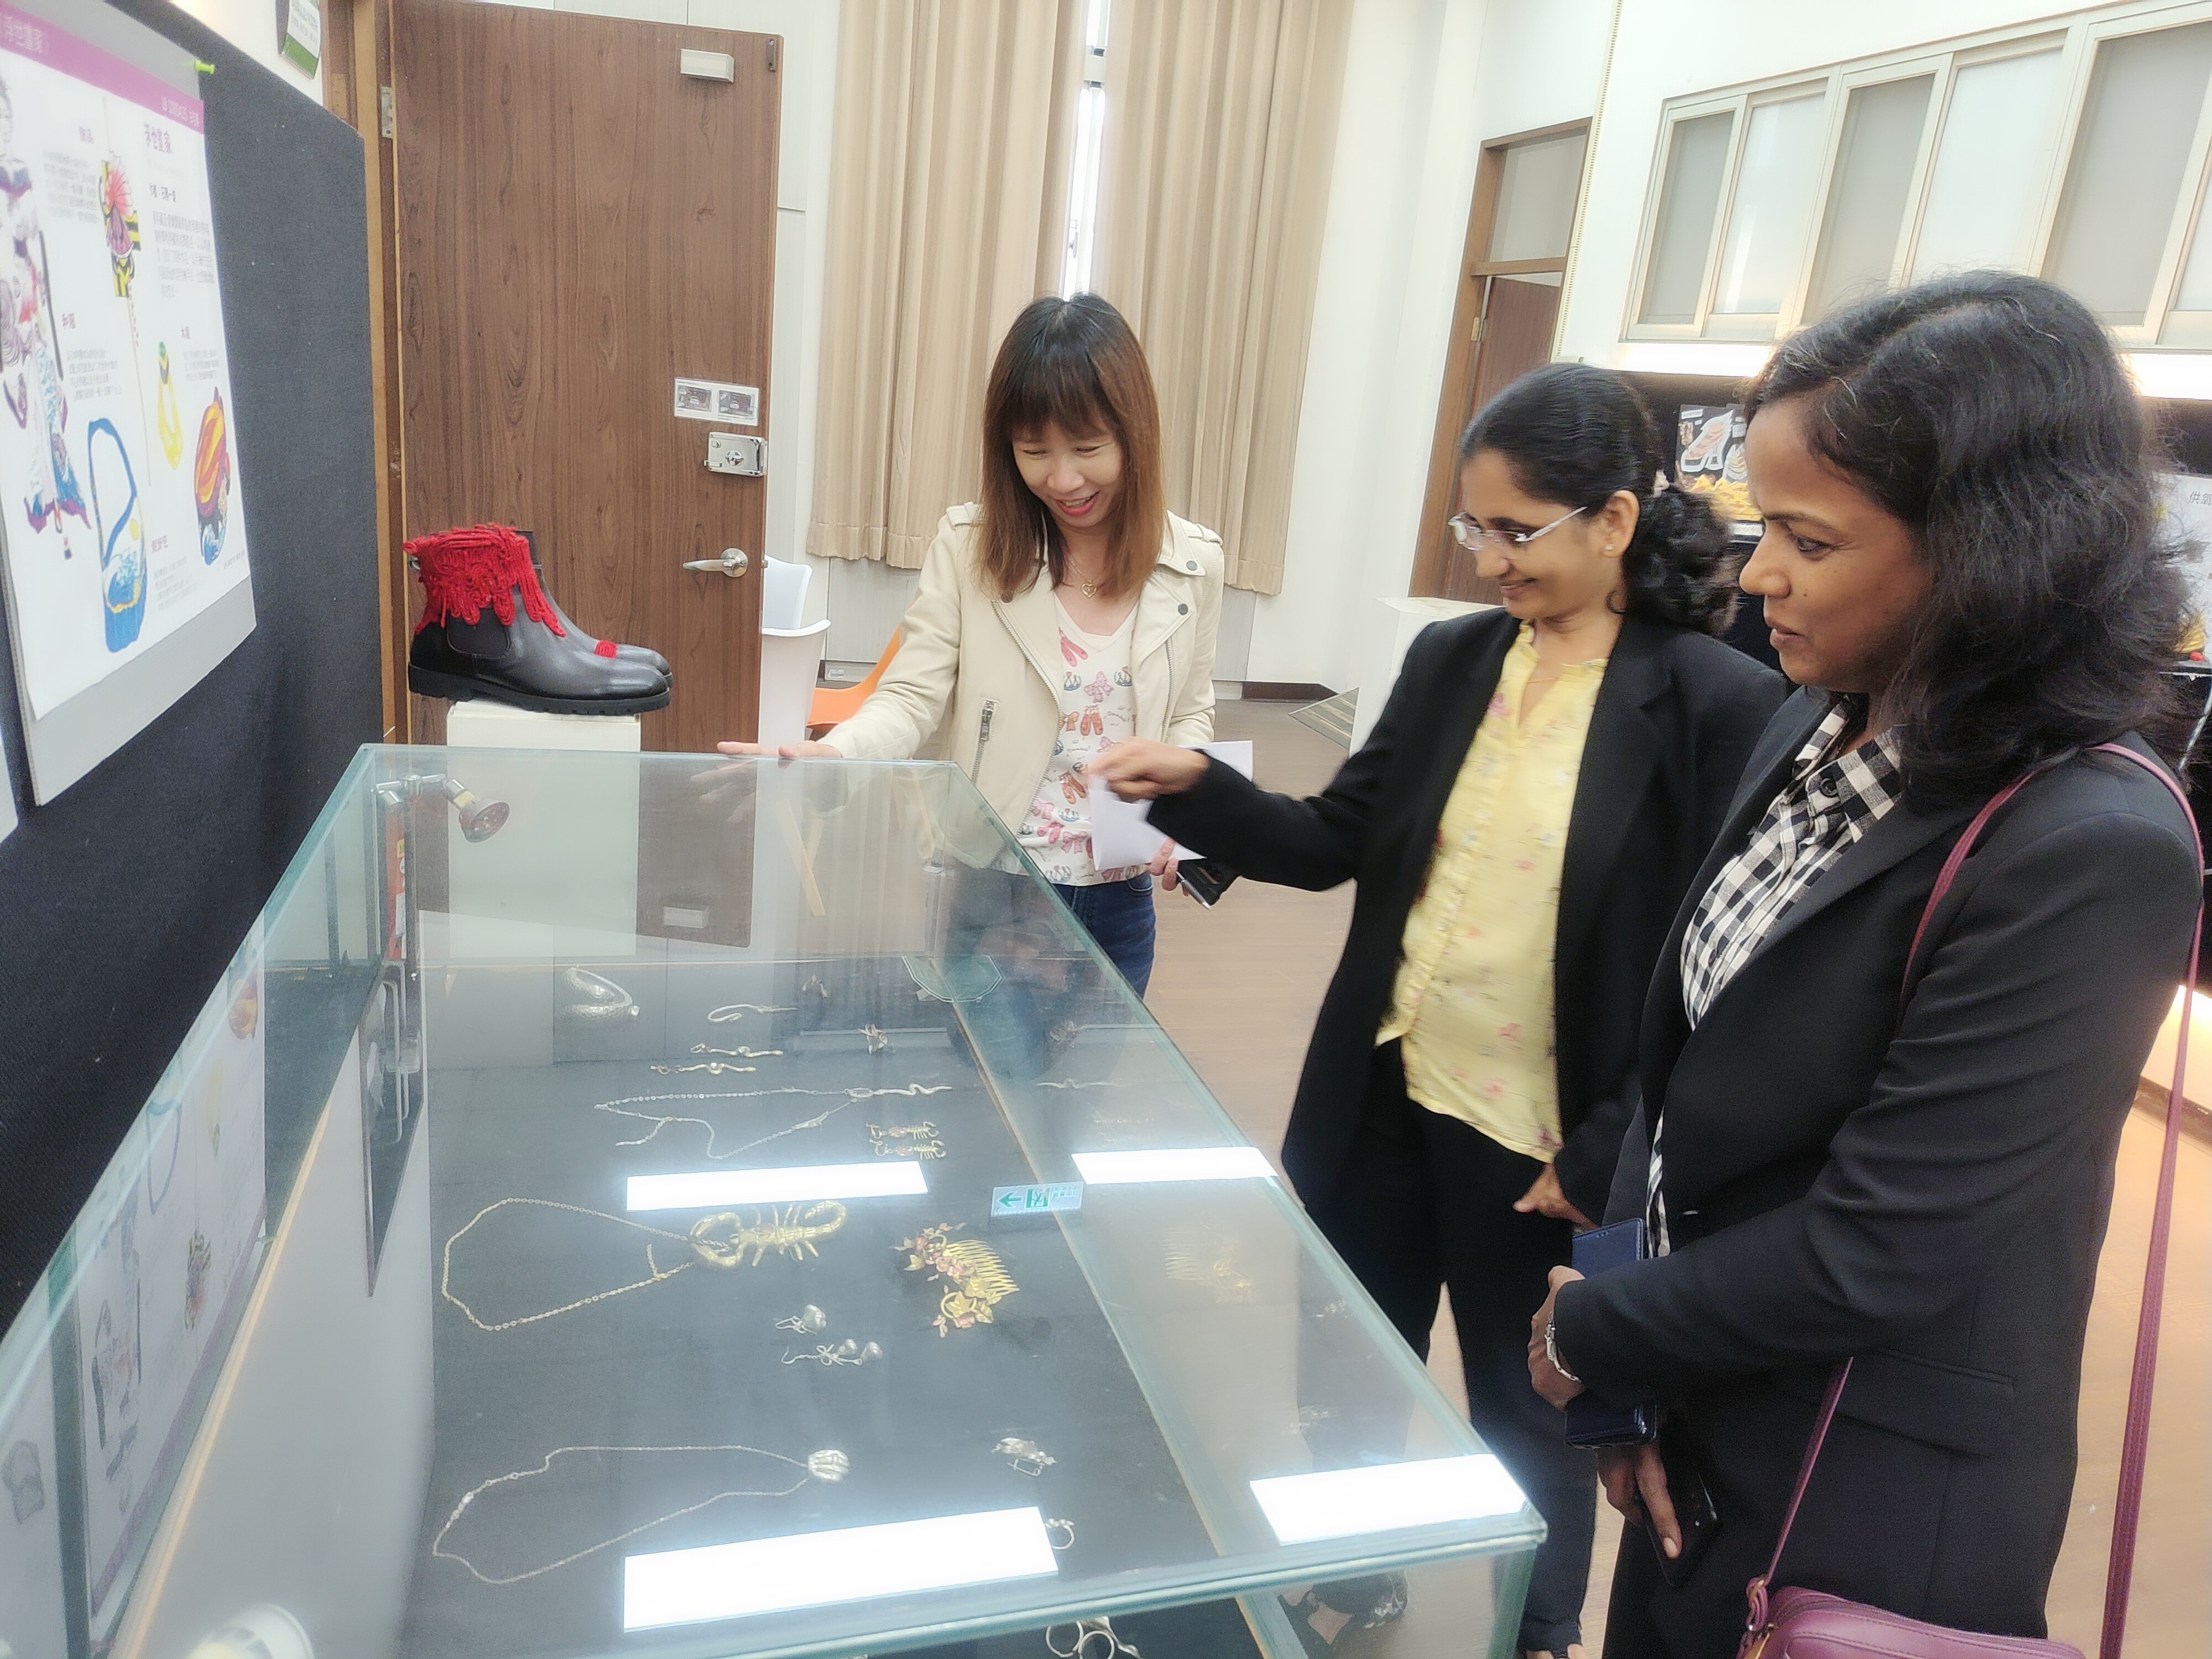 圖為(由左而右)亞大時尚系黃明媛老師，向印度韋洛爾理工大學清奈校區Dr. John Sahaya Rani Alex 、Dr. Jeetashree Aparajeeta，介紹該系師生的服飾作品。